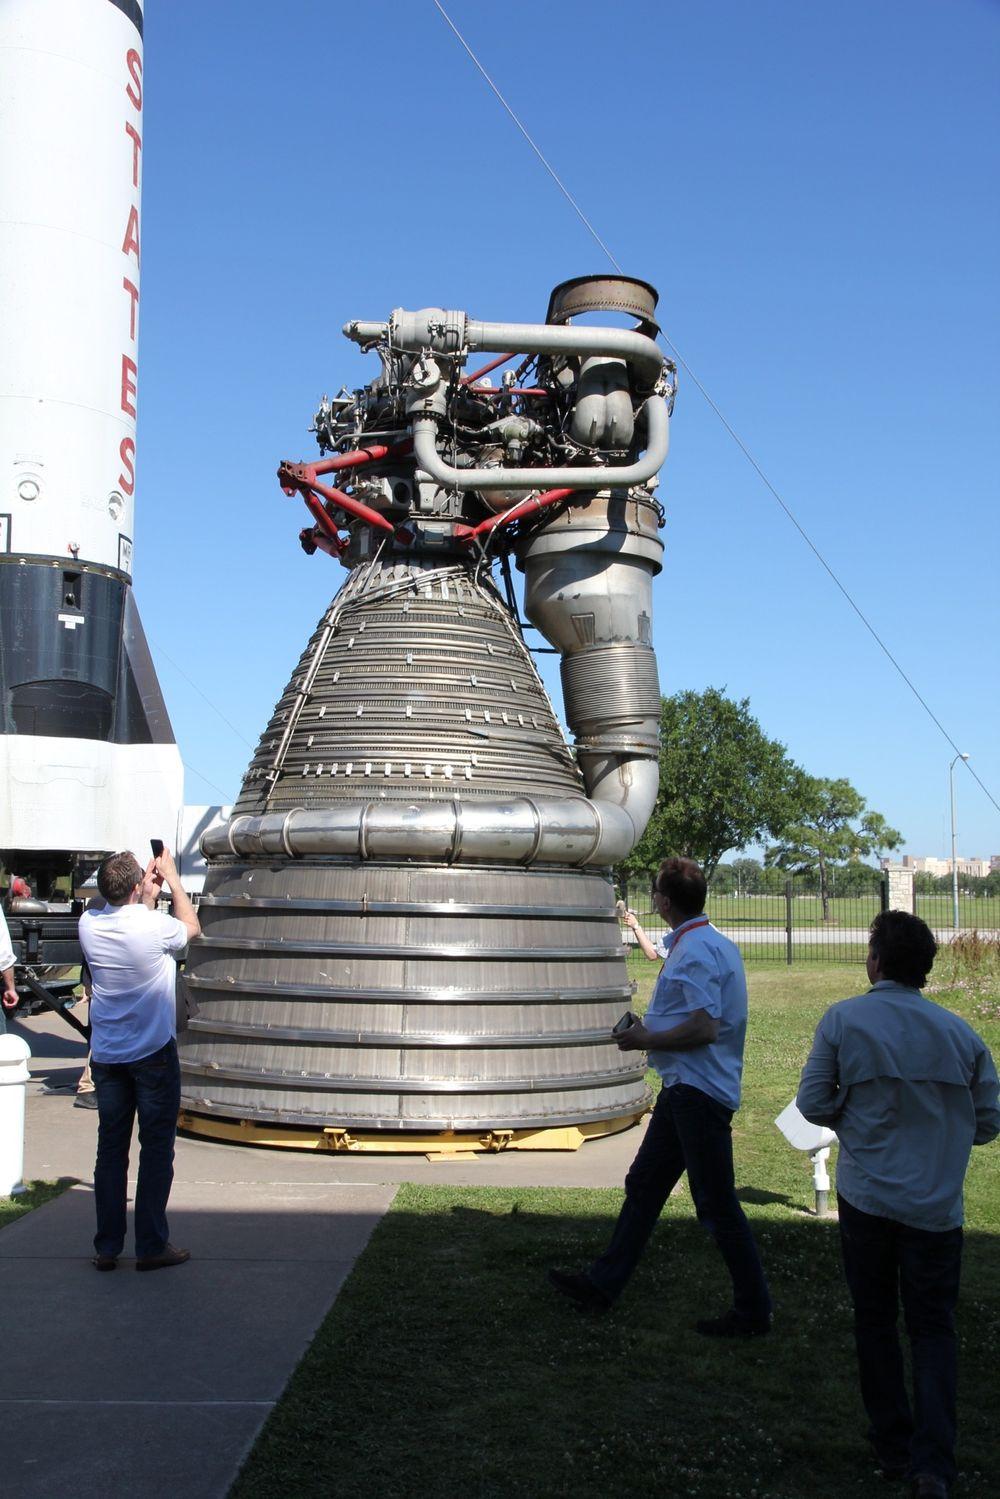 Dette er en Rocketdyne F1 som ble brukt som motor på Saturnprogrammet på 1960-tallet. Denne rakettmotoren med gassgenerator er fortsatt den kraftigste som er laget. 